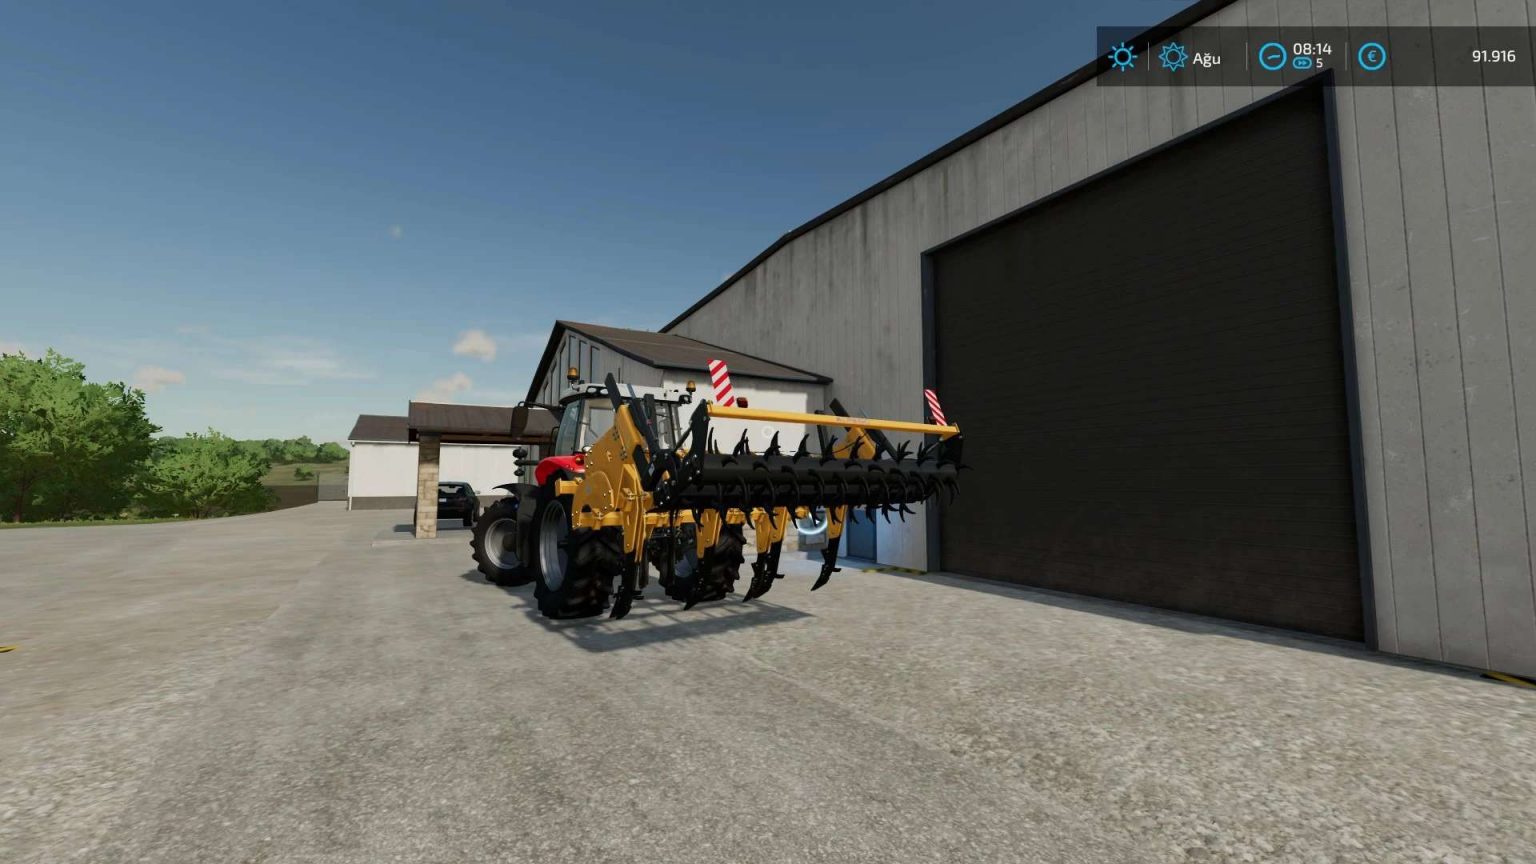 Alpego Kf7 350 V10 Fs22 Farming Simulator 22 Mod Fs22 Mod 5371